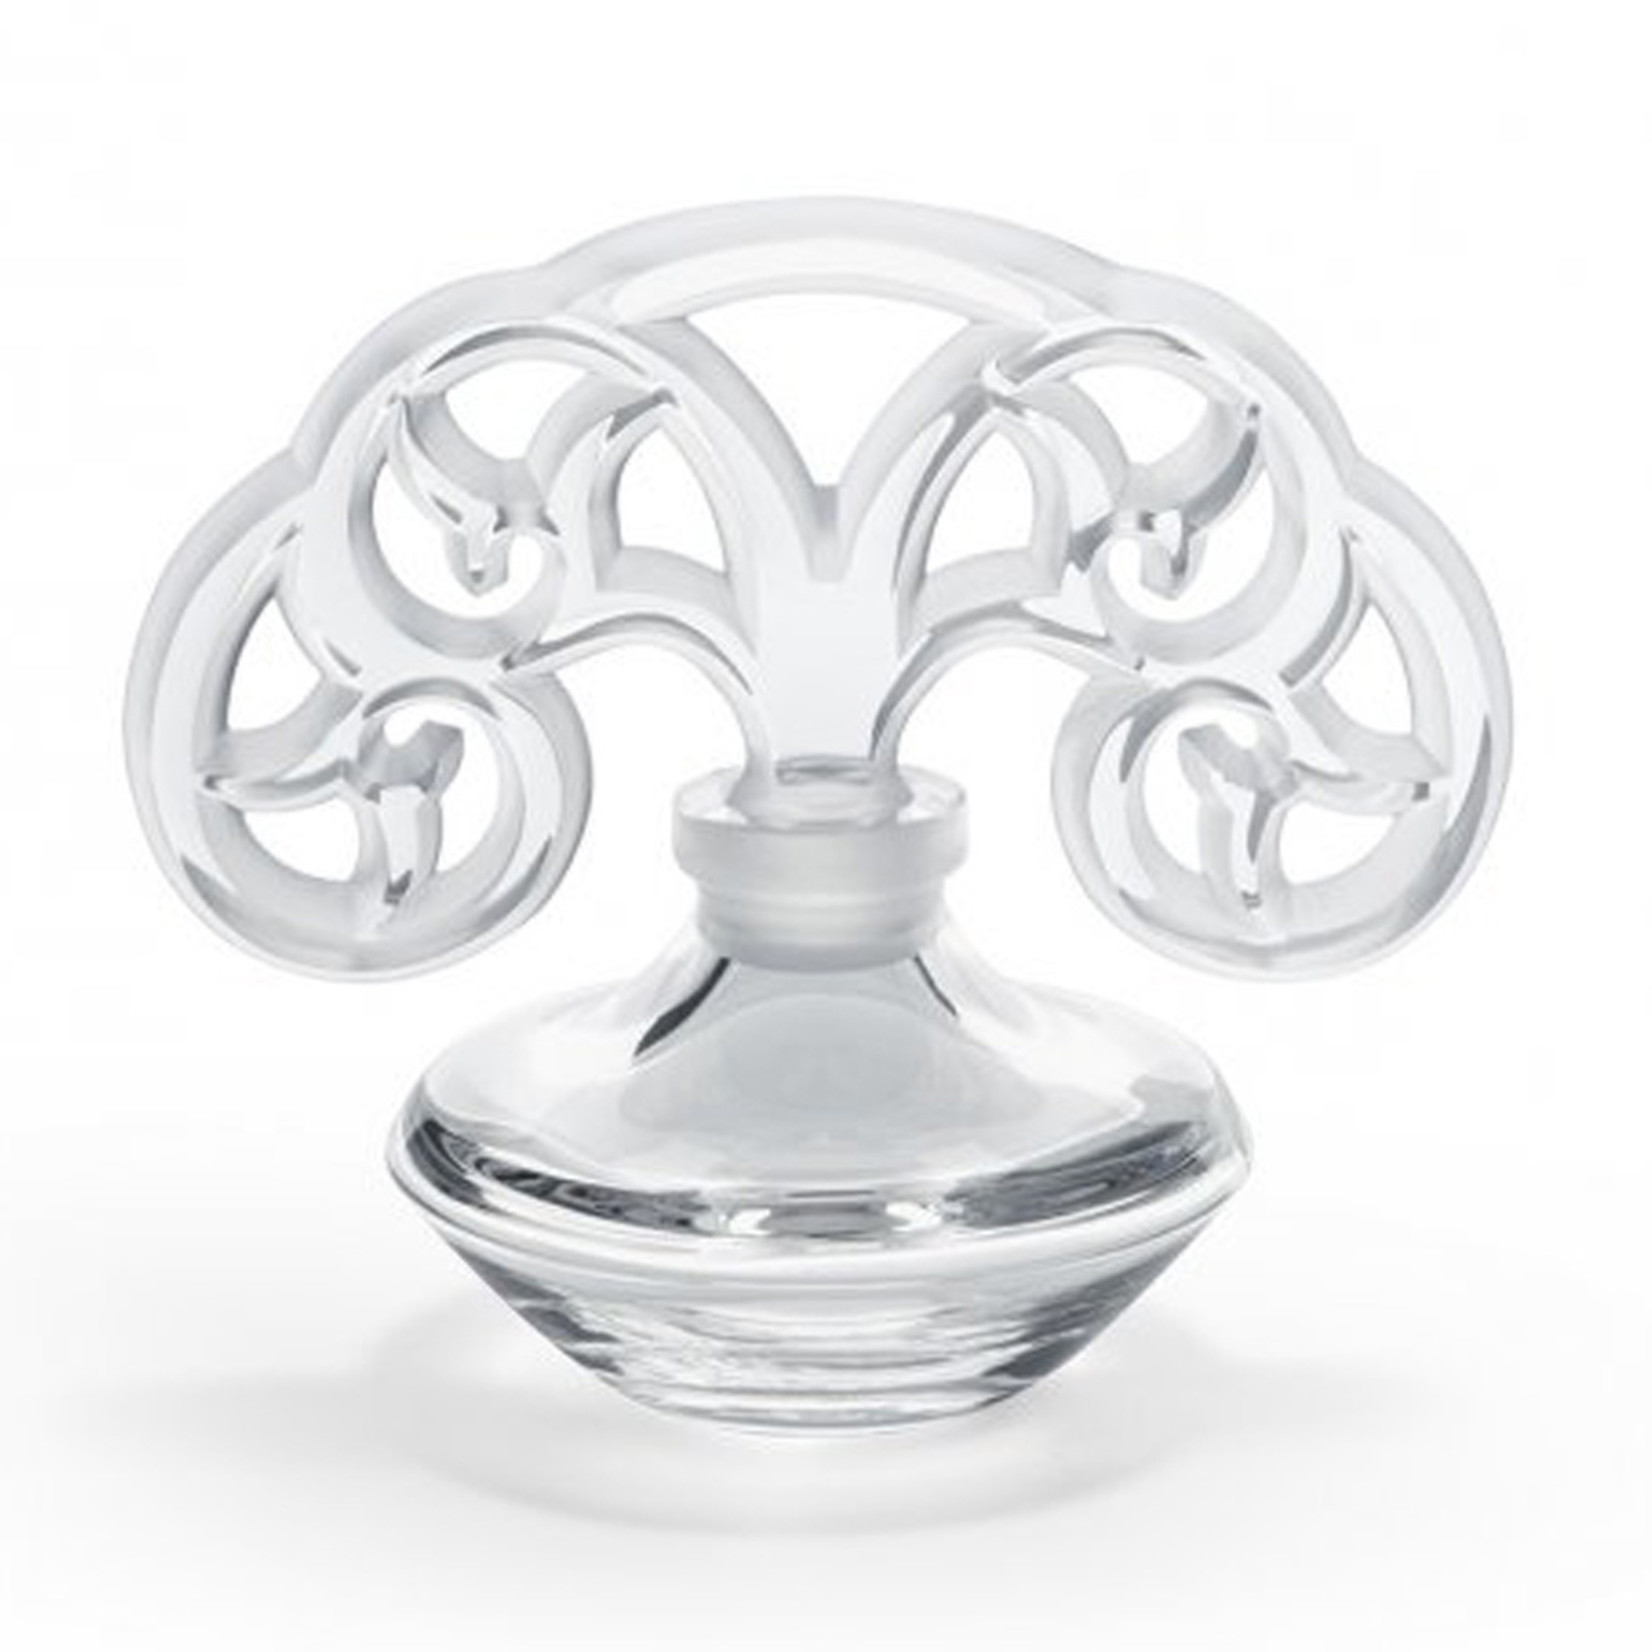 Lalique Tourbillons Perfume Bottle Clr